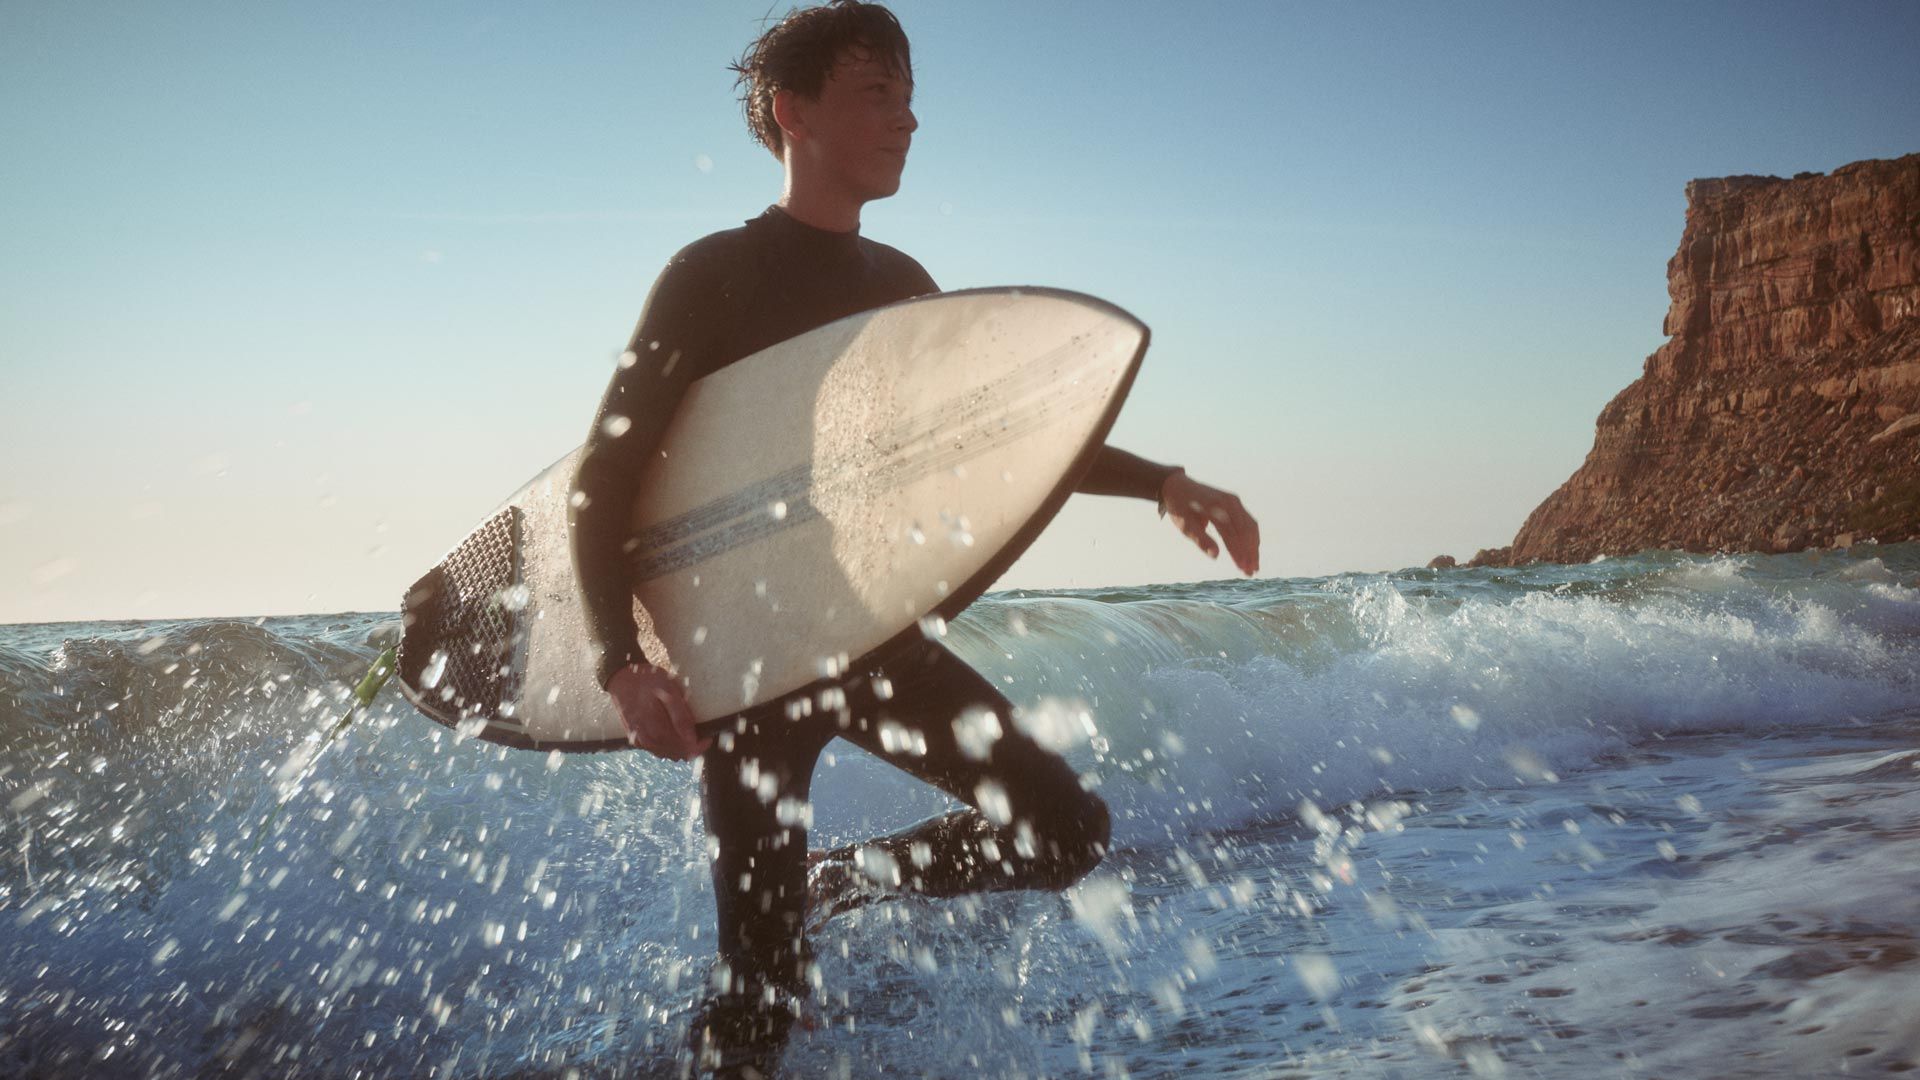 Strandszene - Ein junger Mann watet mit einen Surfbrett unter dem Arm durch das kniehohe Wasser.  